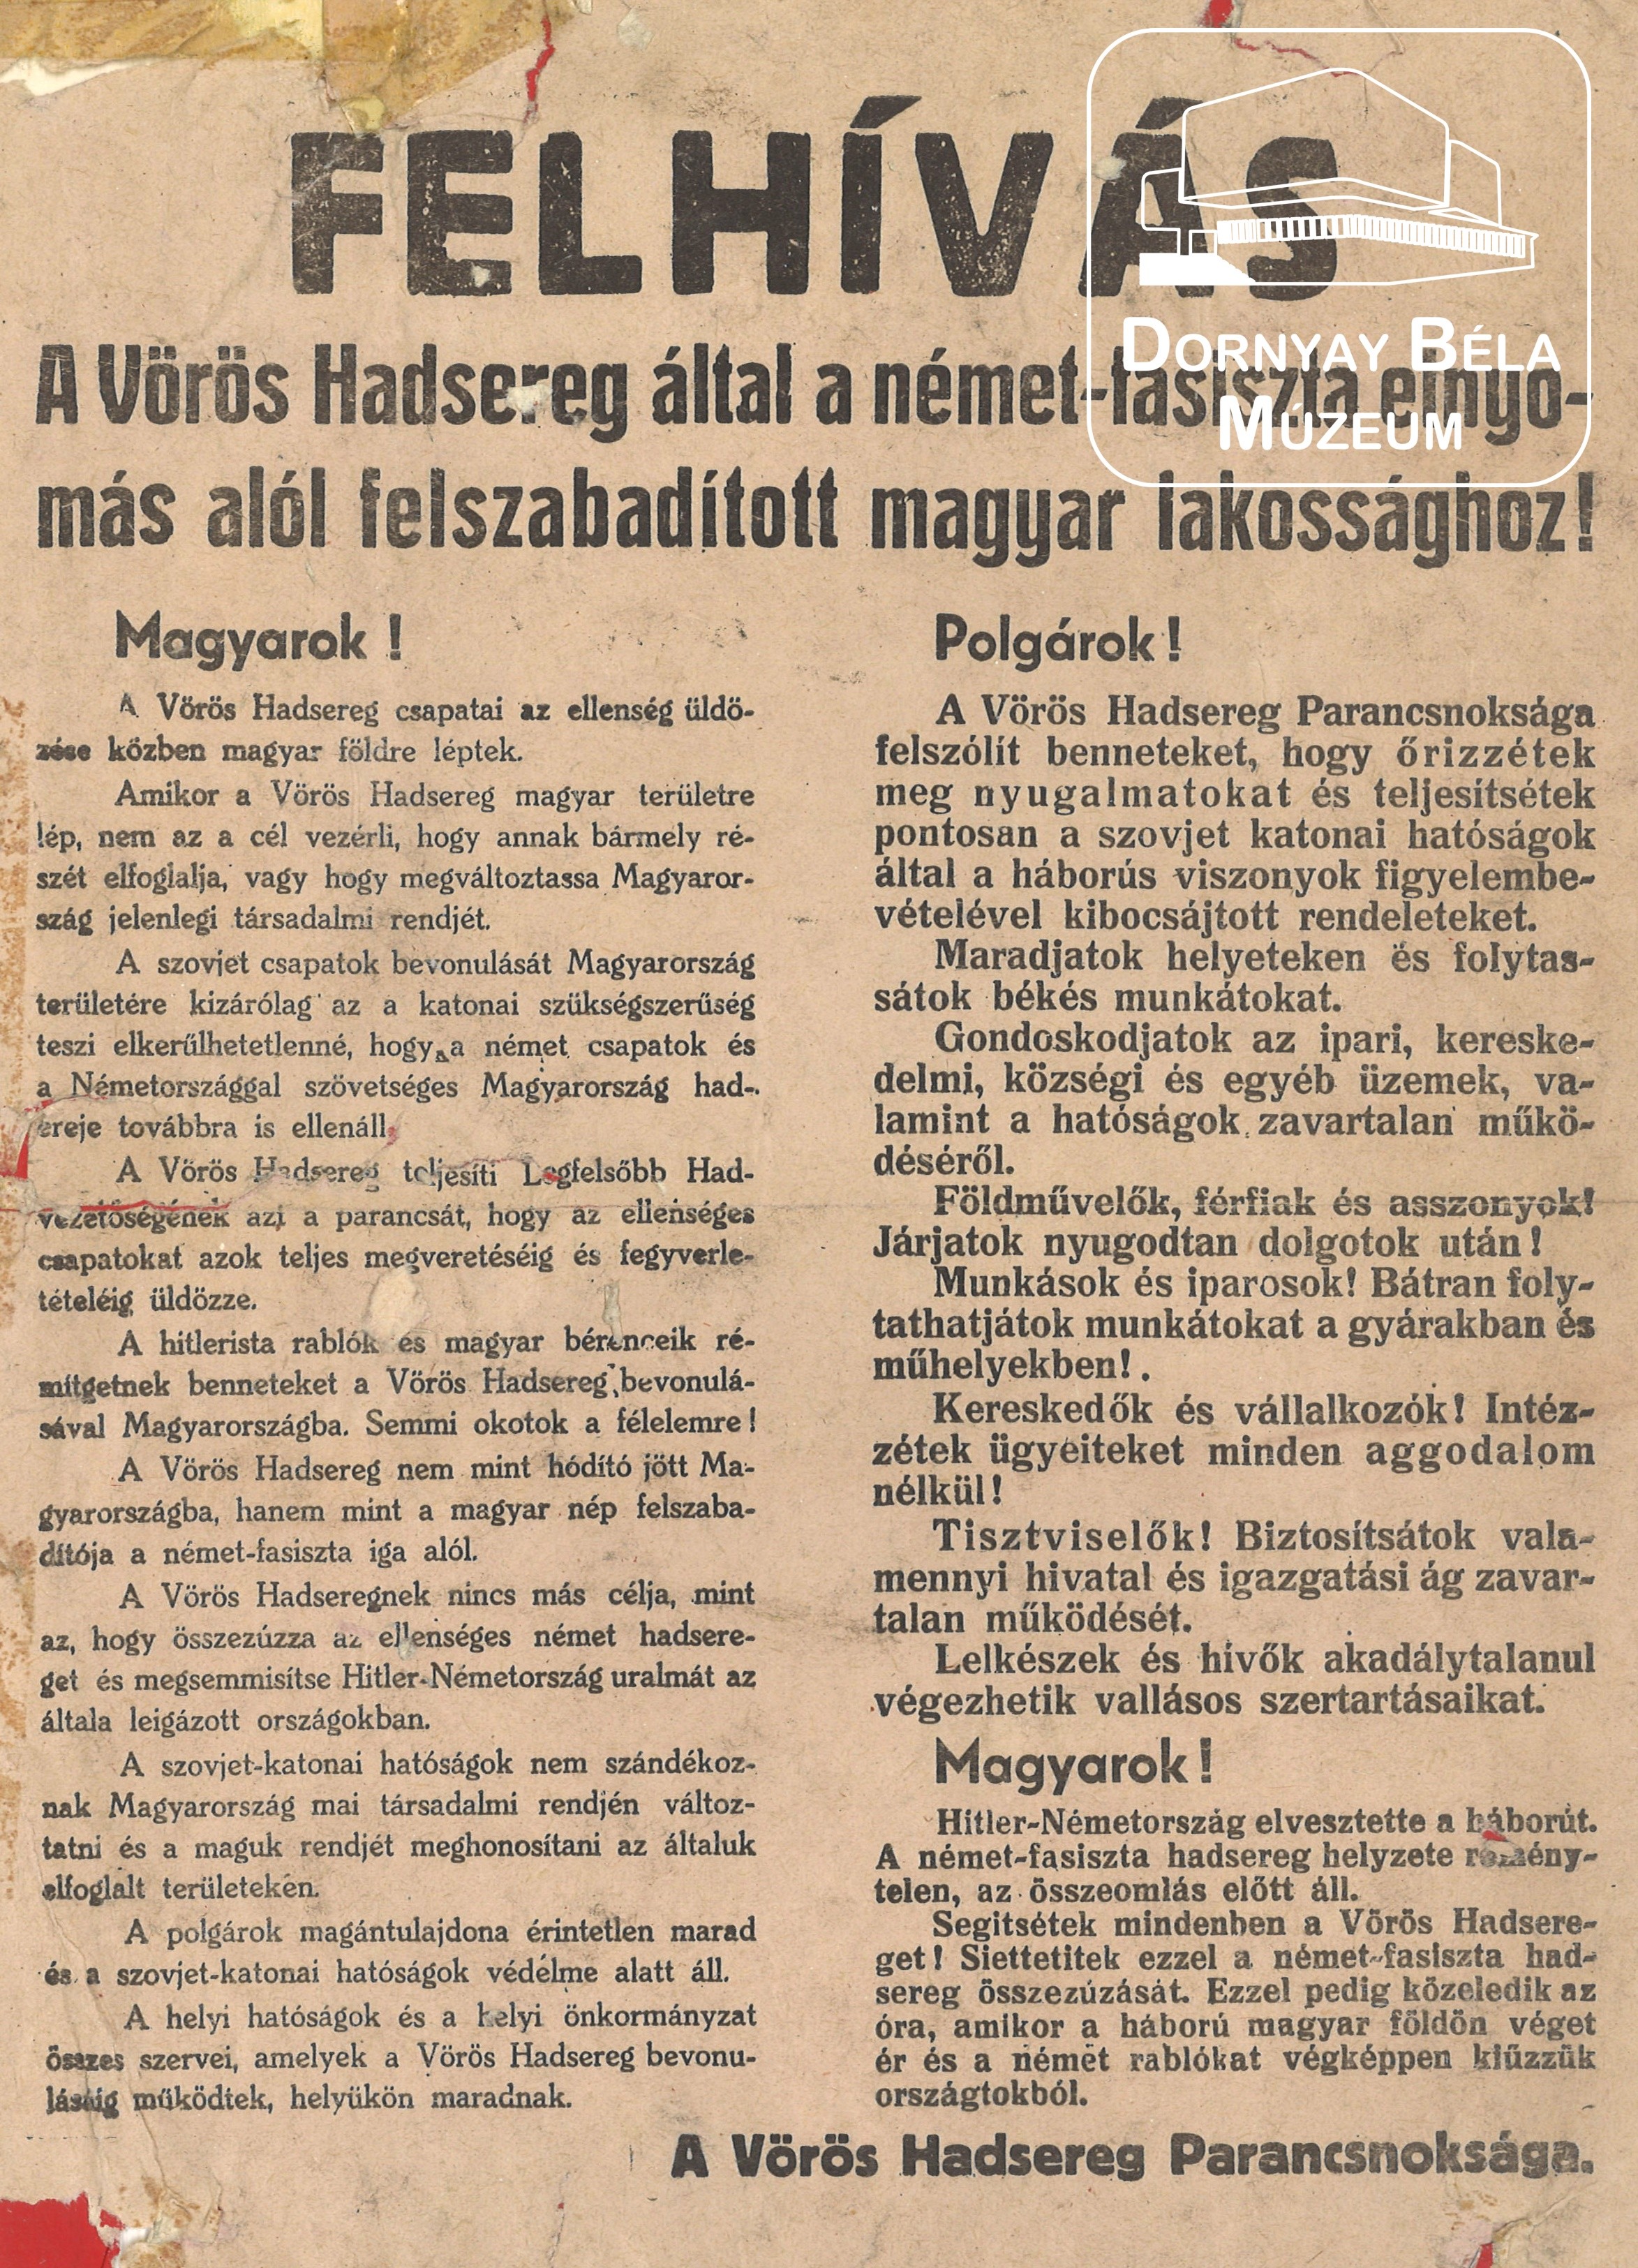 Vörös Hadsereg parancsnokságának felhívása felszabadított magyar lakossághoz. (Dornyay Béla Múzeum, Salgótarján CC BY-NC-SA)